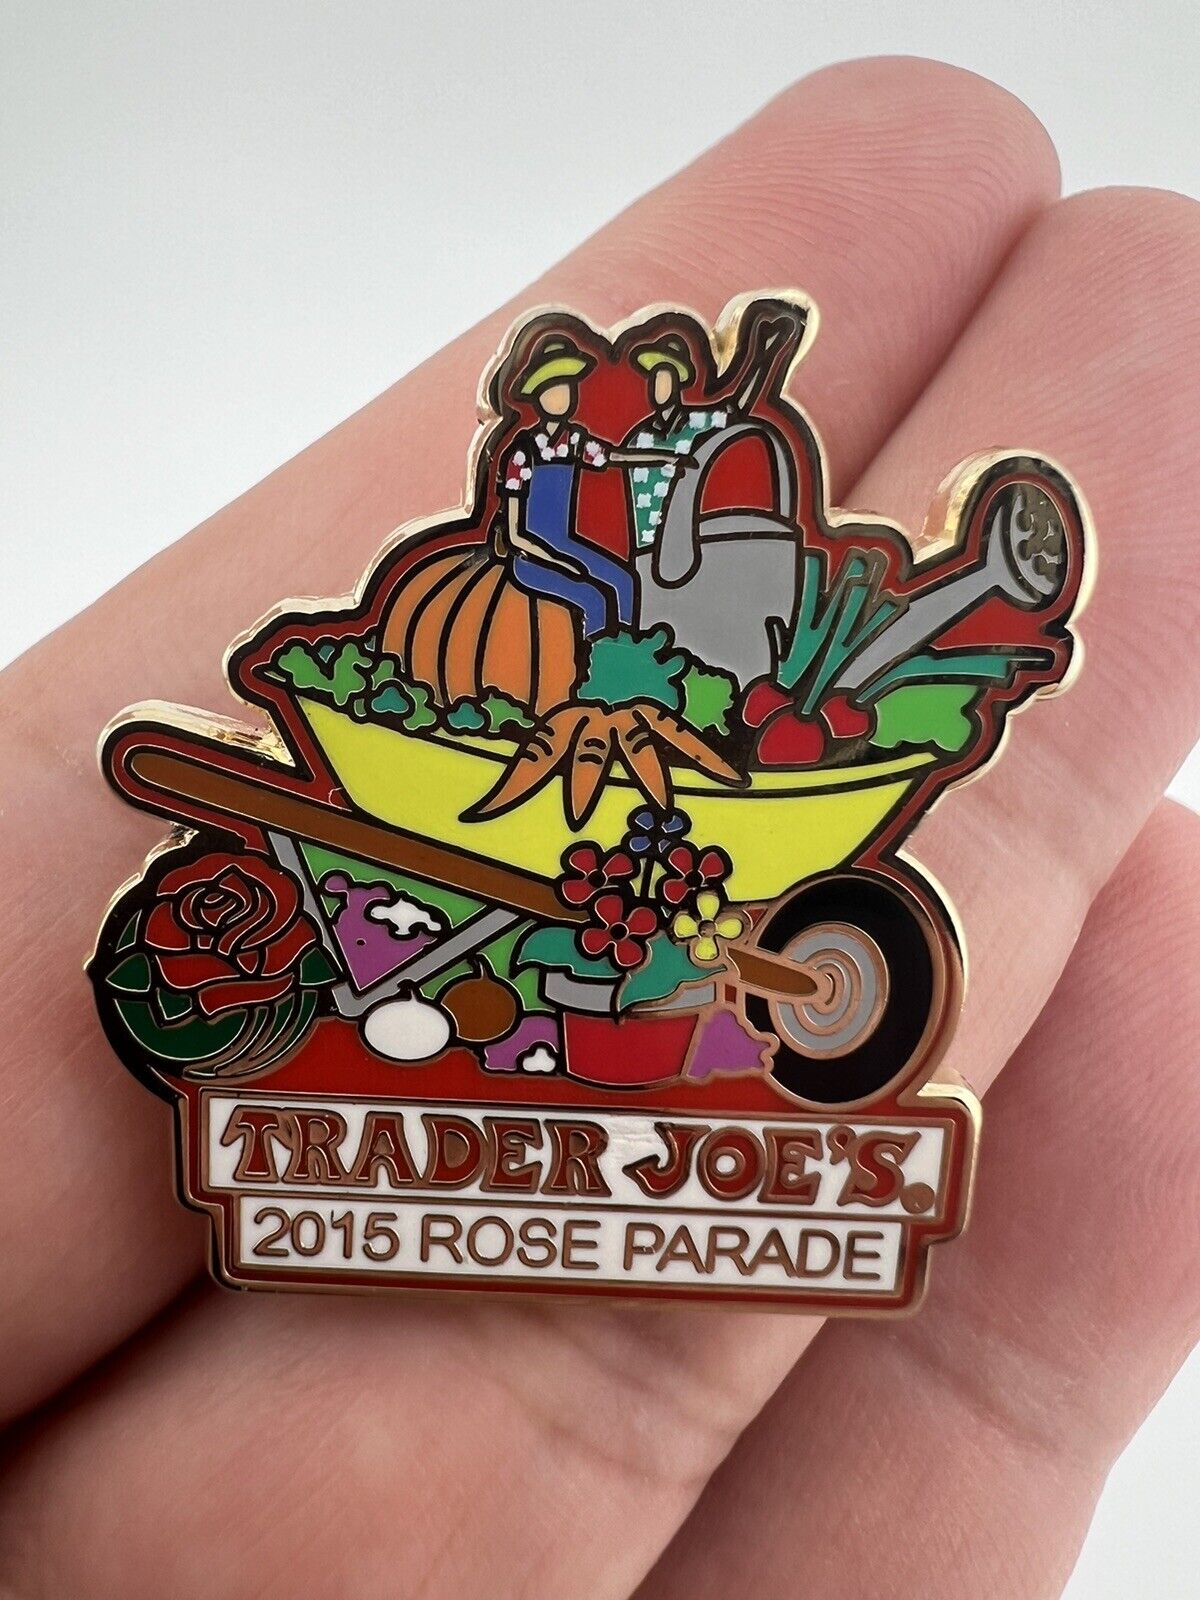 Trader Joe’s 2015 Rose Parade Wheel Barrow Full Of Produce Collectible Pin